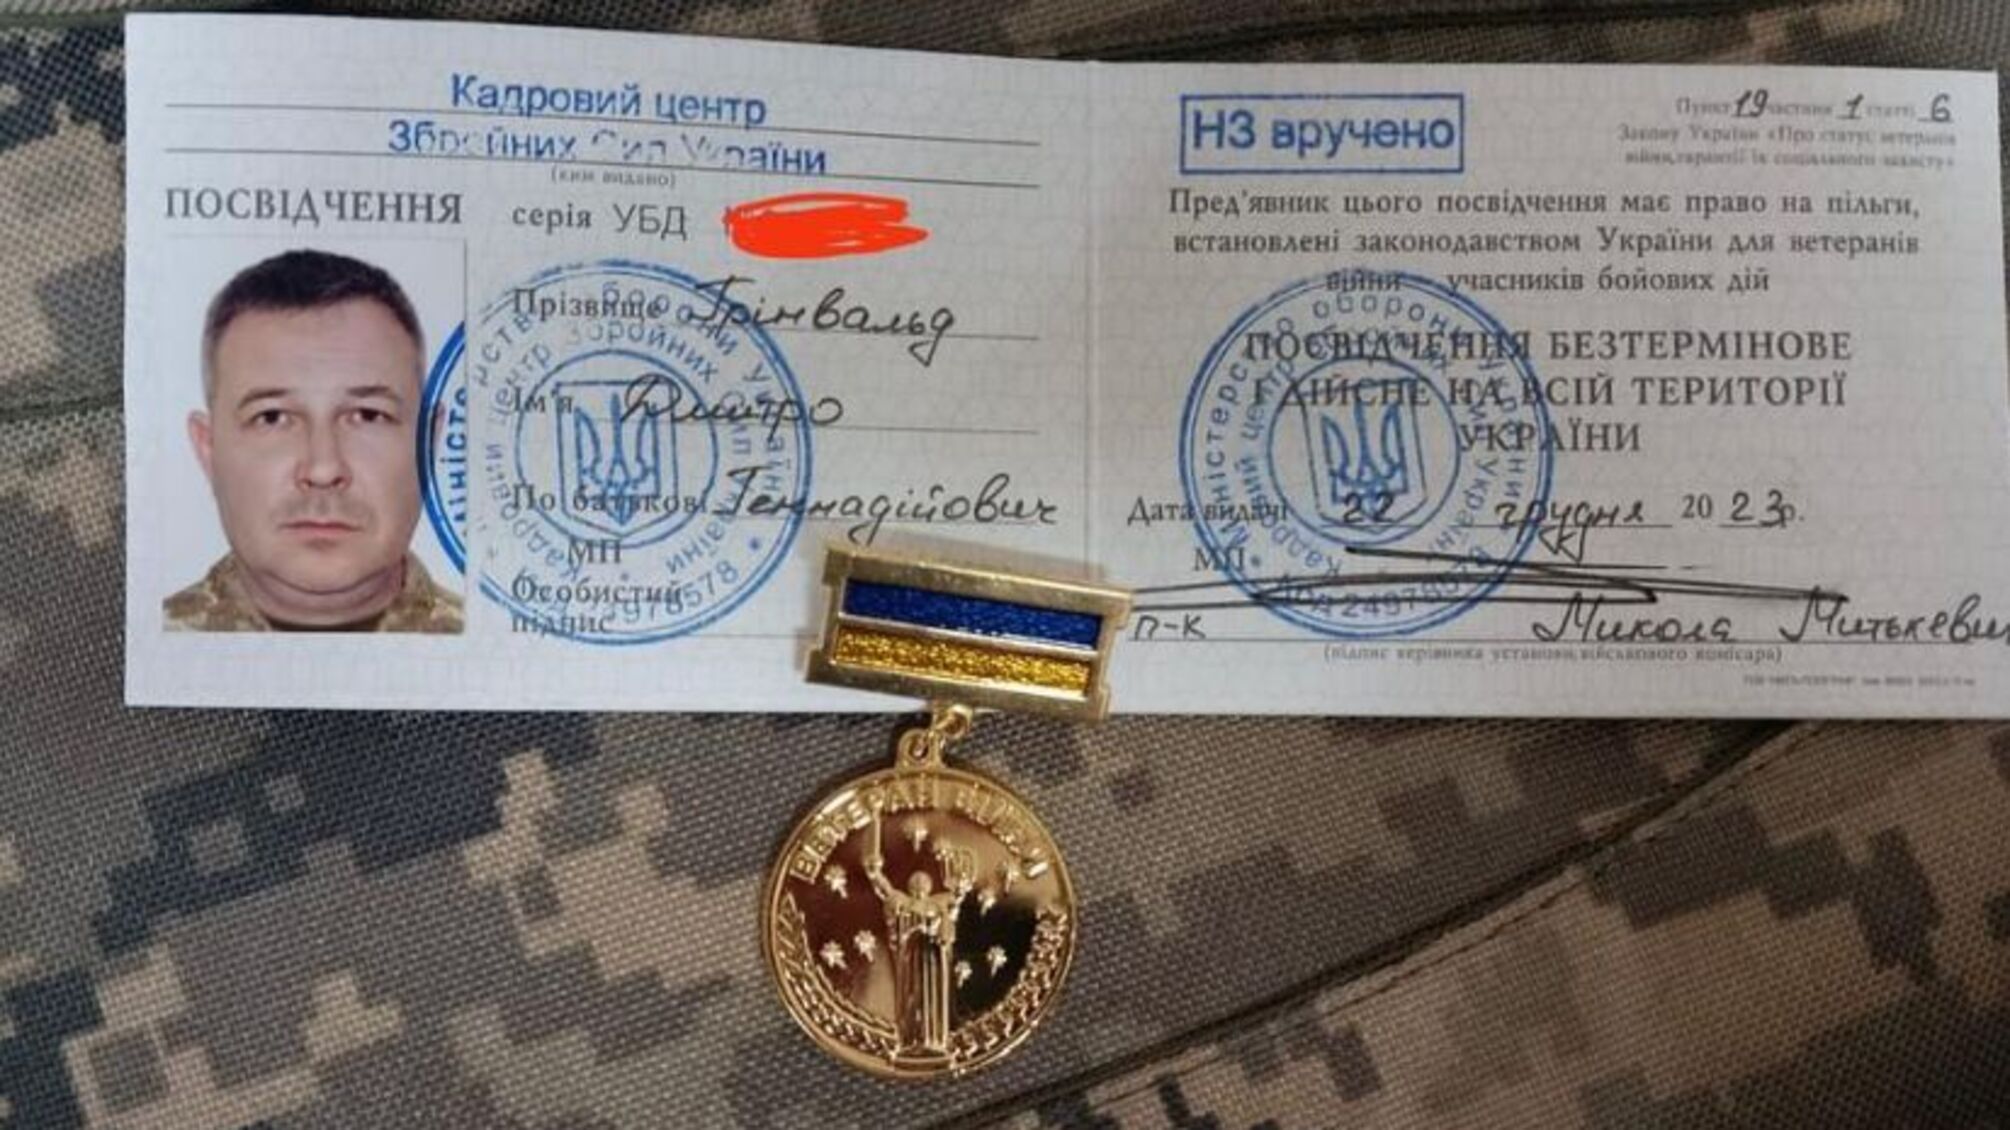 Харьковский стопкоровец Дмитрий Гринвальд получил статус УБД и нагрудный знак